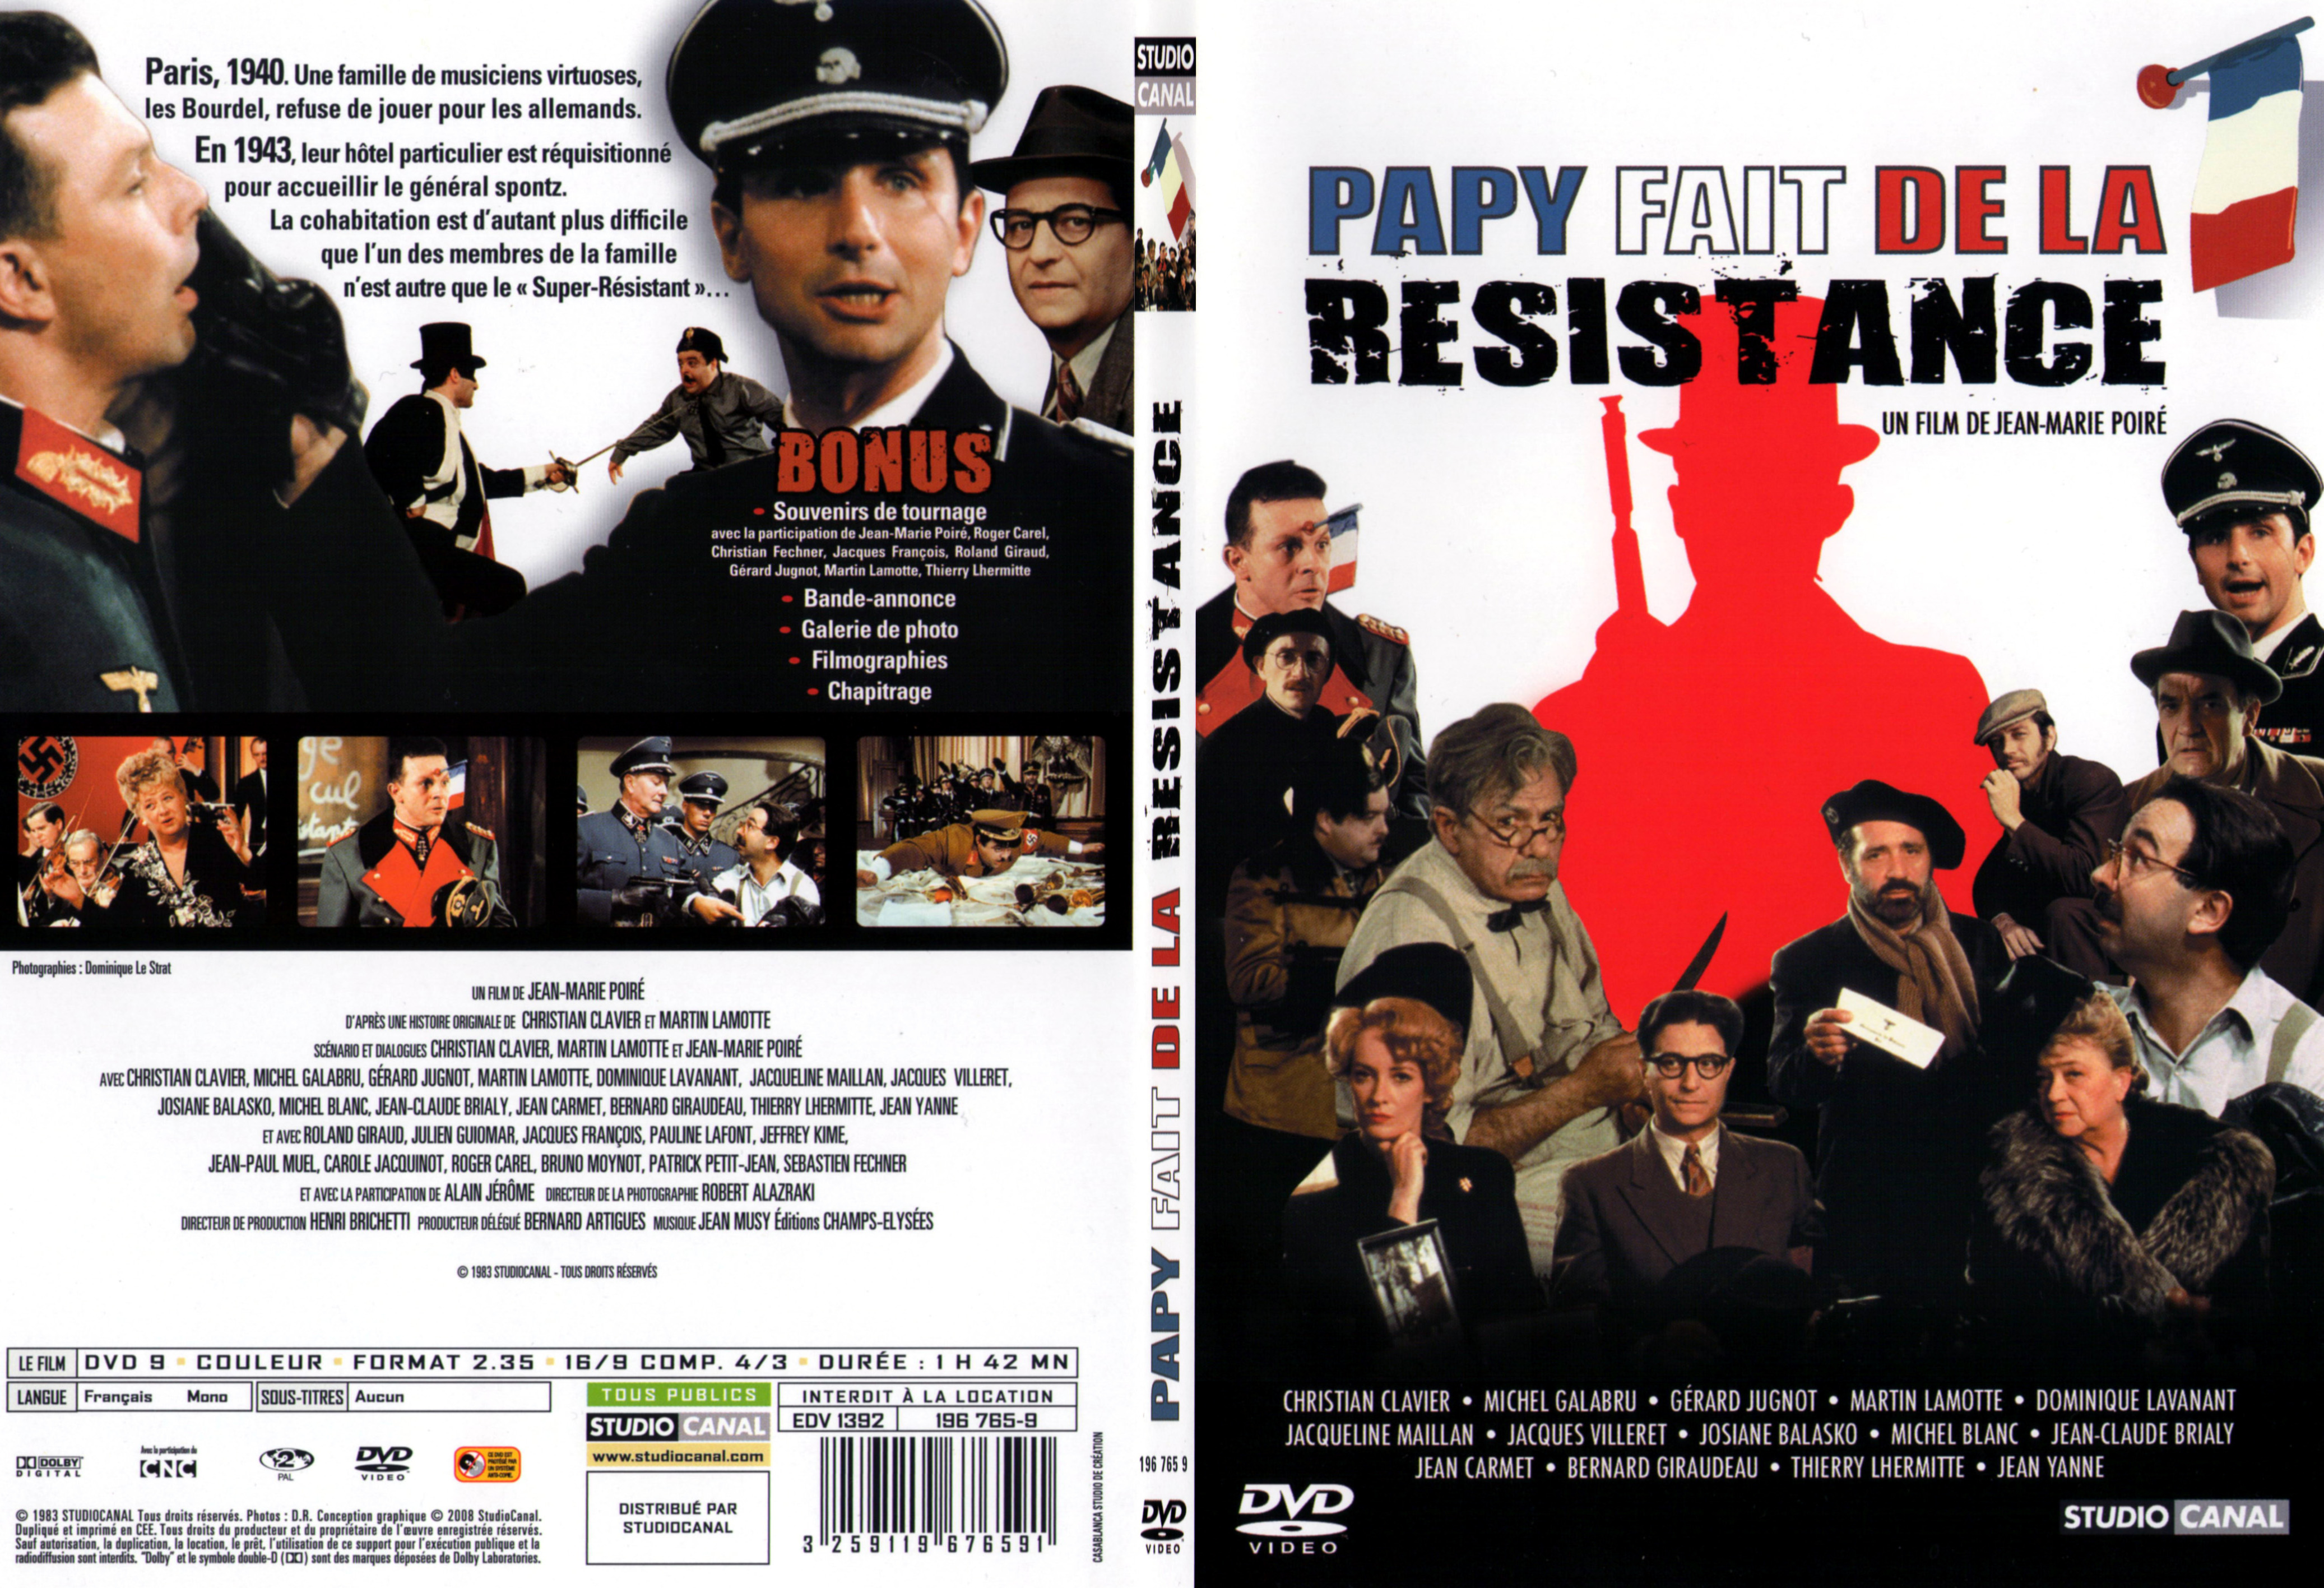 Jaquette DVD Papy fait de la resistance - SLIM v2